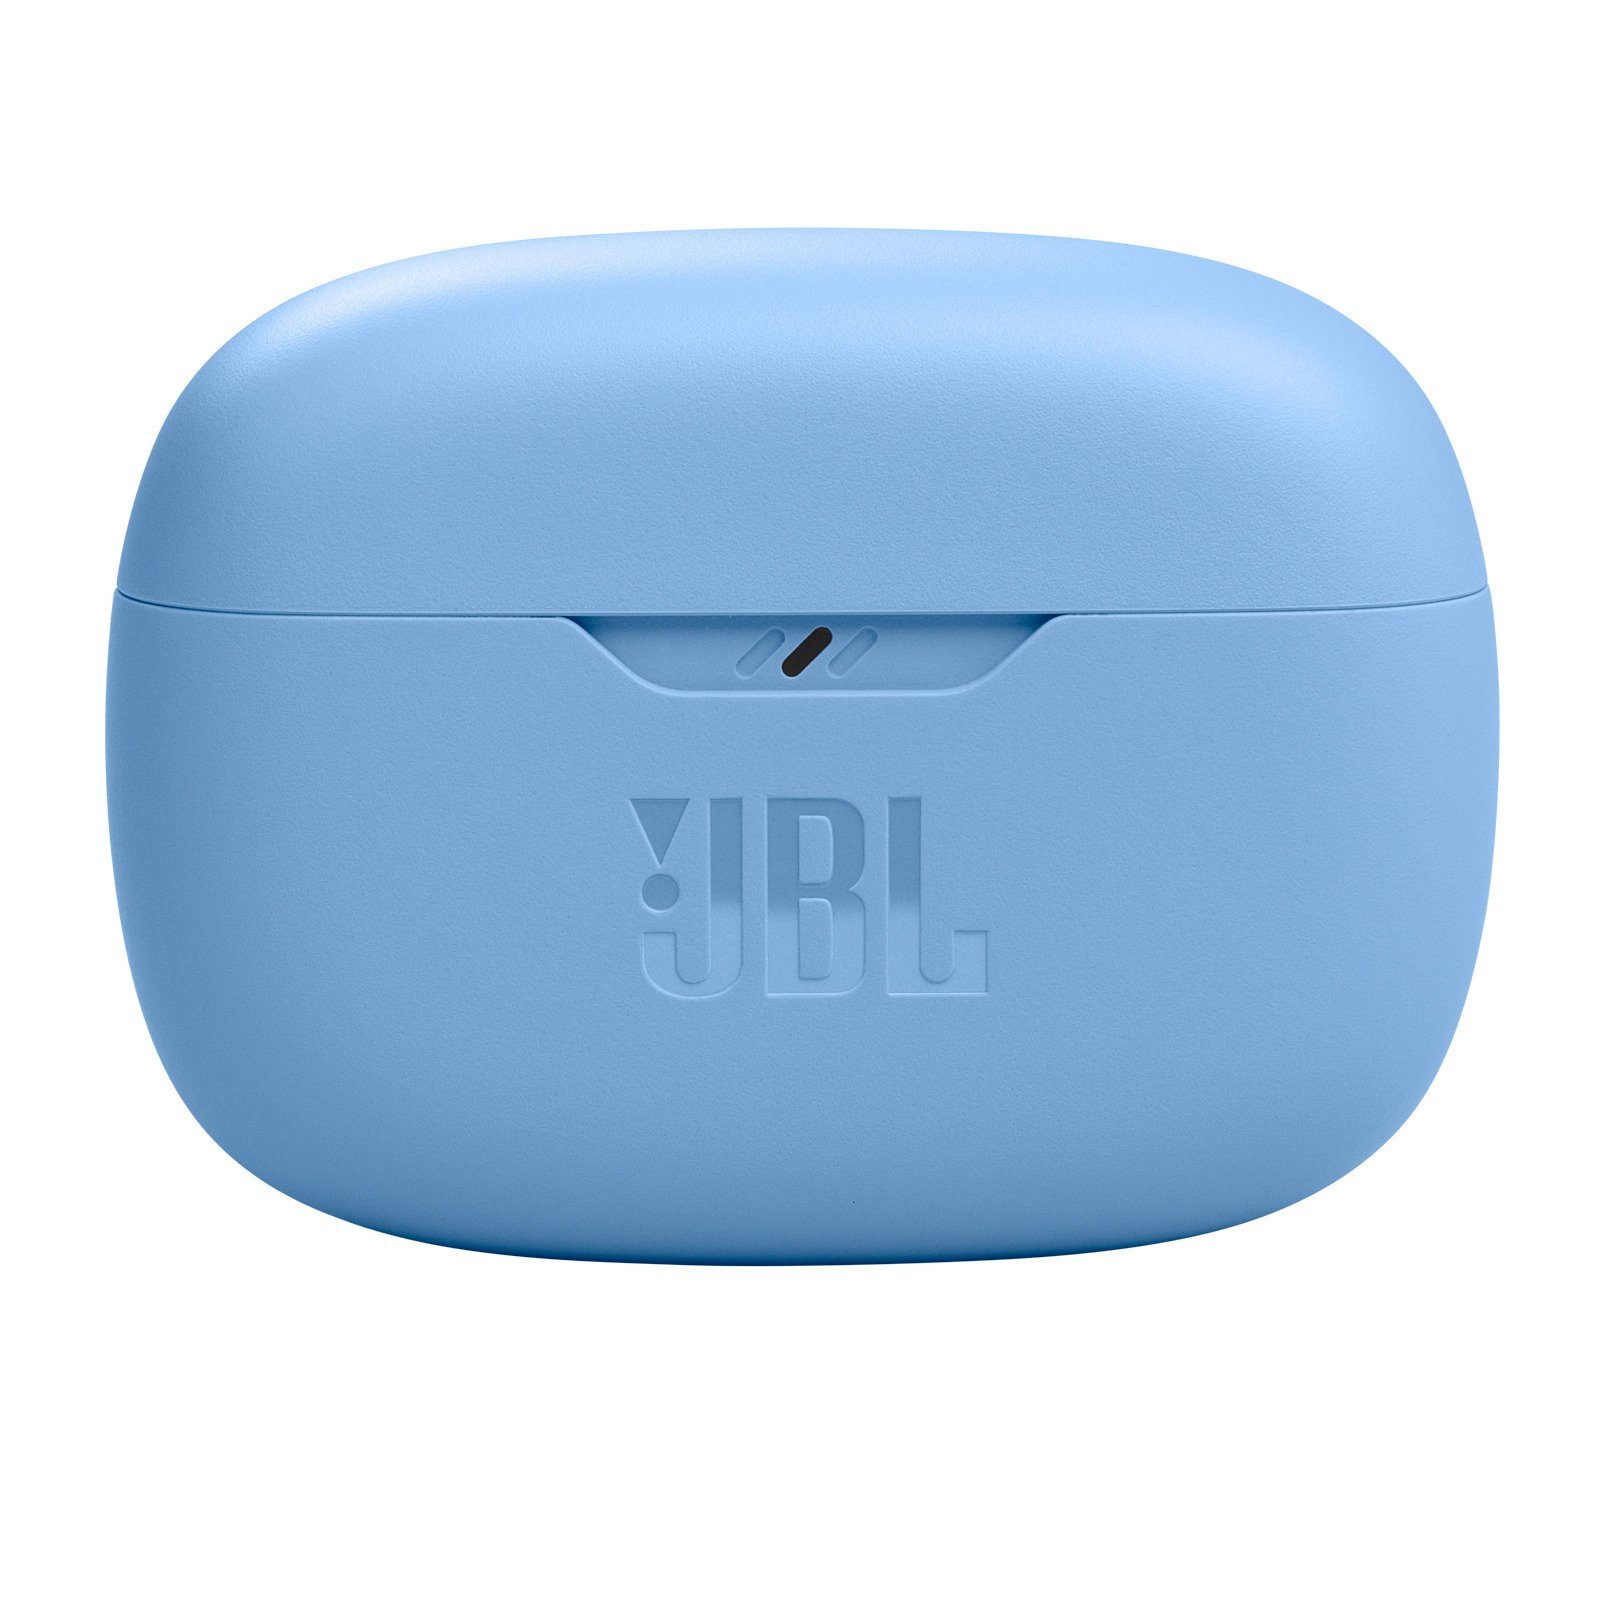 JBL Wave Beam wireless In-Ear-Kopfhörer Blau